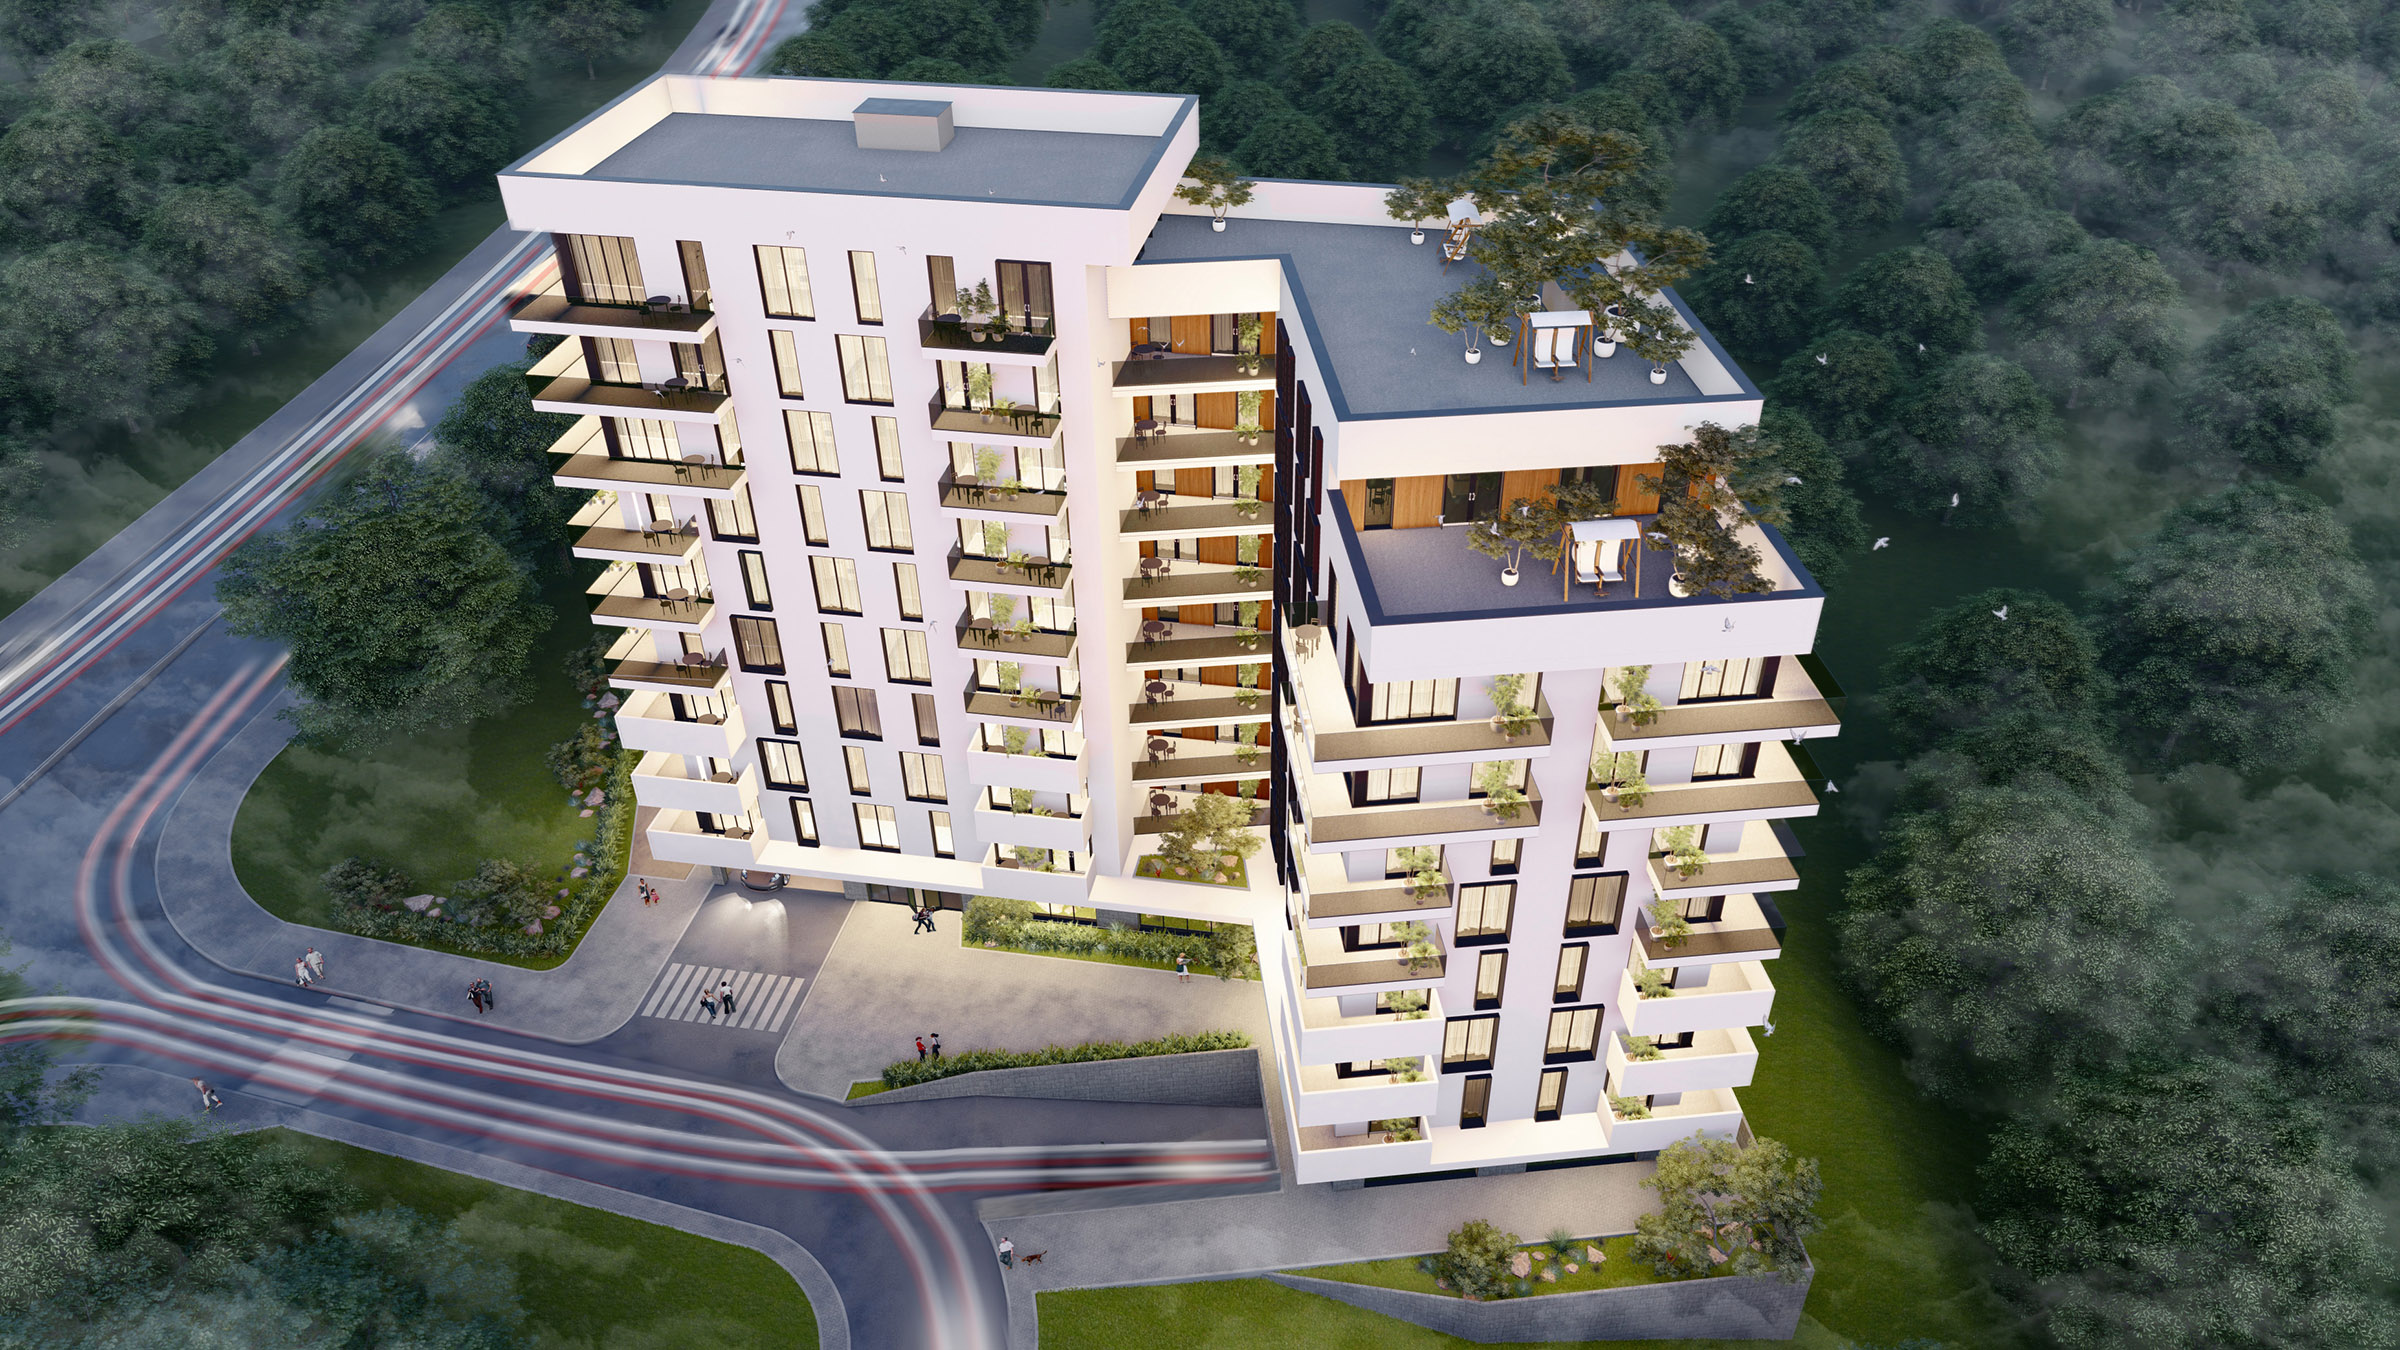 Proiect arhitectural de bloc de locuit cu respectarea rigorilor tehnice necesare pentru confortul locatarilor